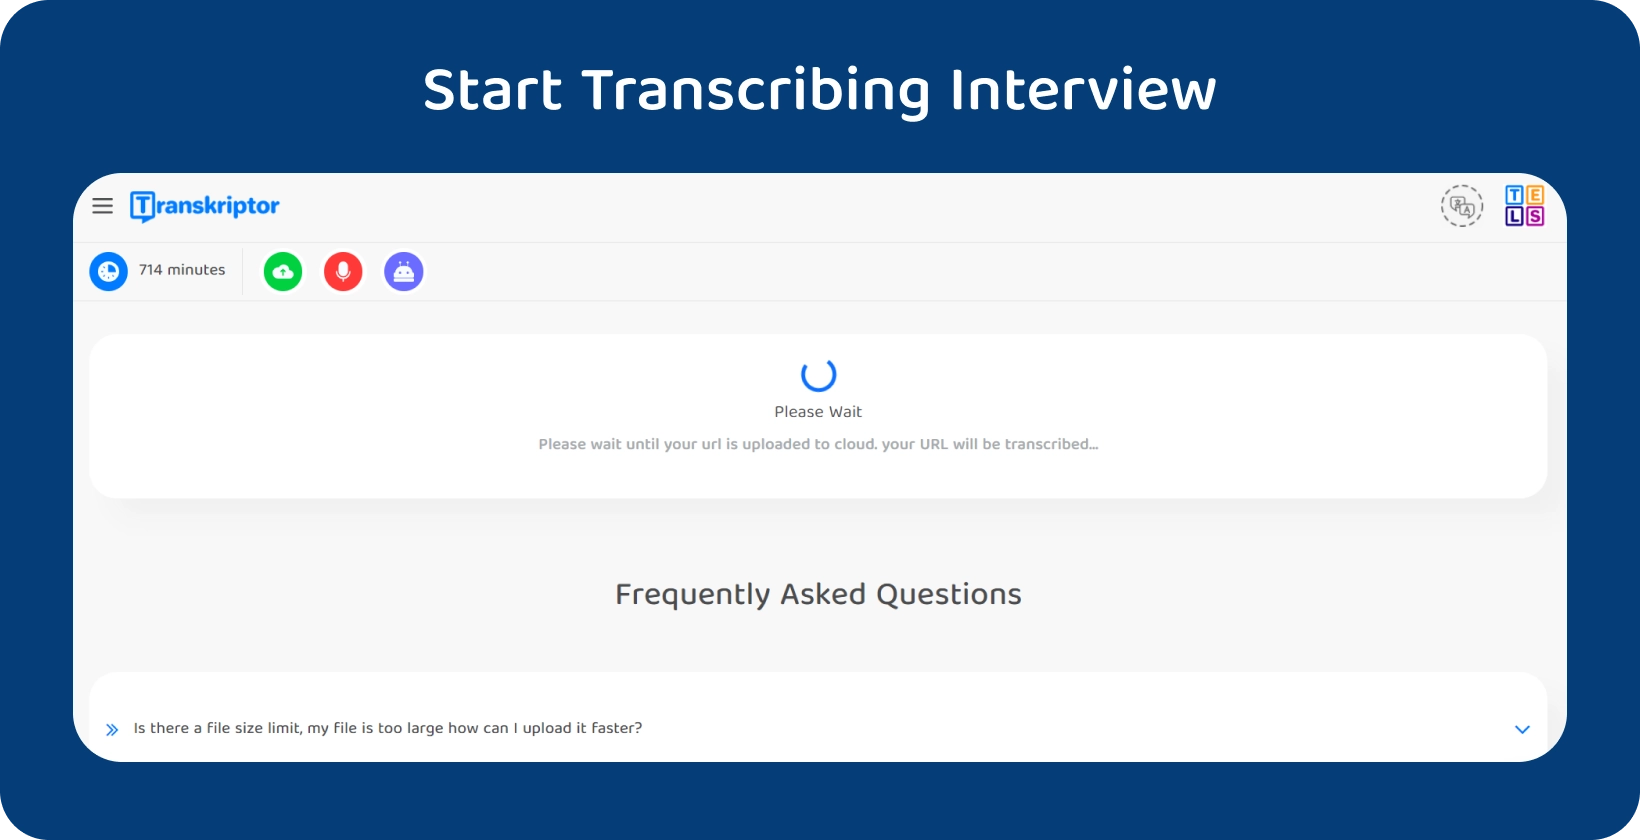 Start avhandlingstranskripsjon med Transkriptor, som viser et 714-minutters intervju som venter på behandling.